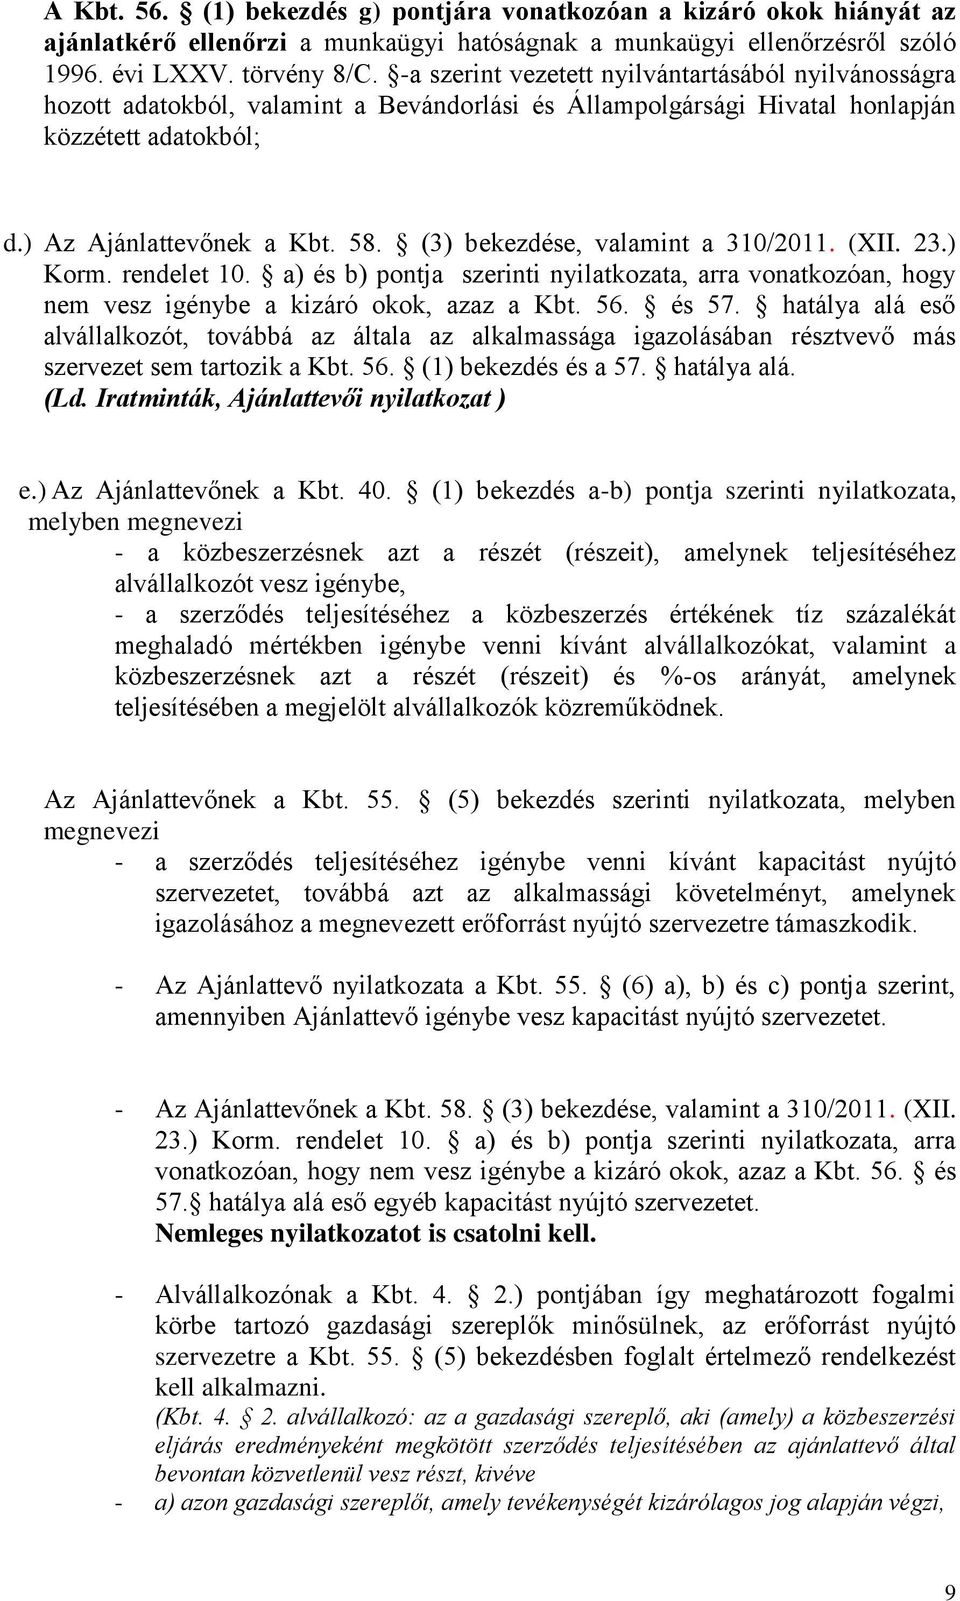 (3) bekezdése, valamint a 310/2011. (XII. 23.) Korm. rendelet 10. a) és b) pontja szerinti nyilatkozata, arra vonatkozóan, hogy nem vesz igénybe a kizáró okok, azaz a Kbt. 56. és 57.